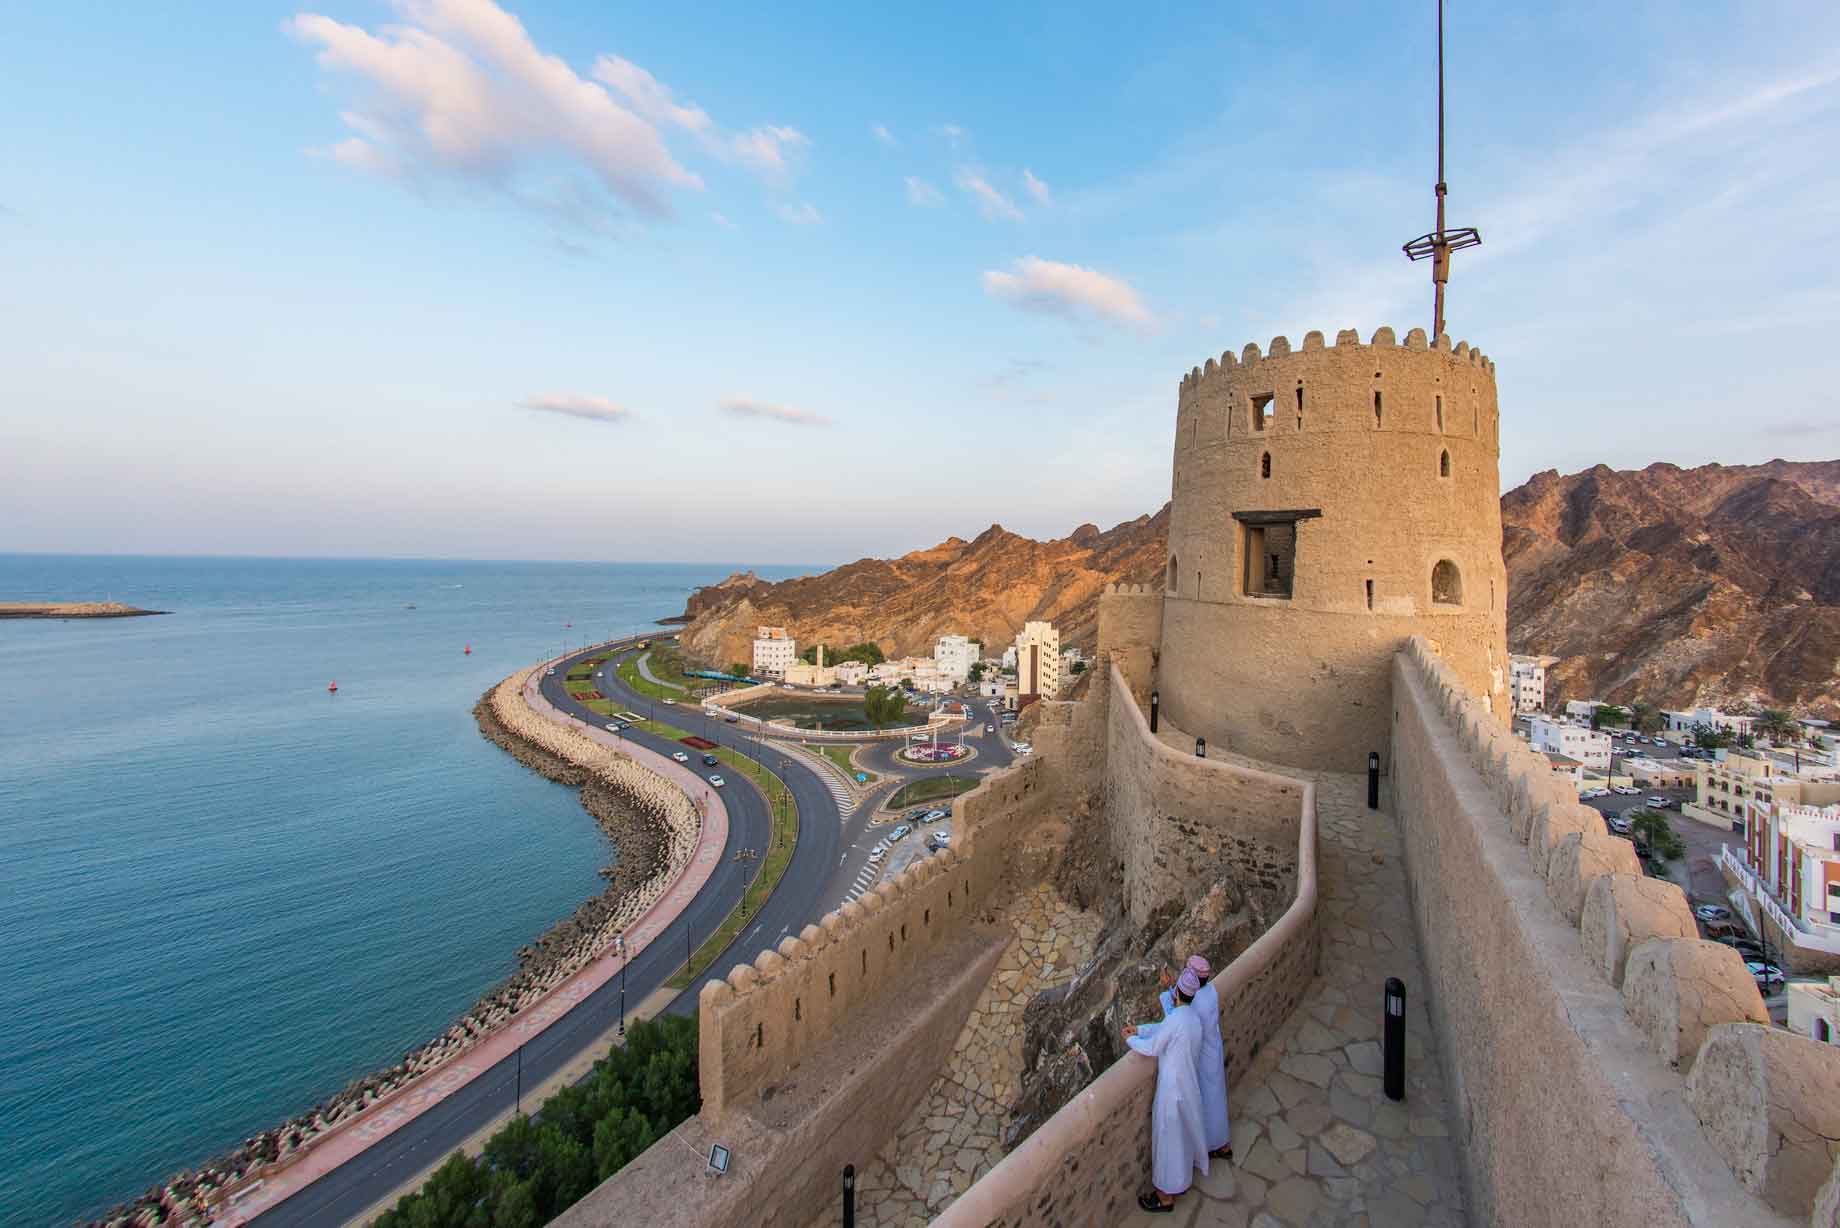 Oman in a glimpse